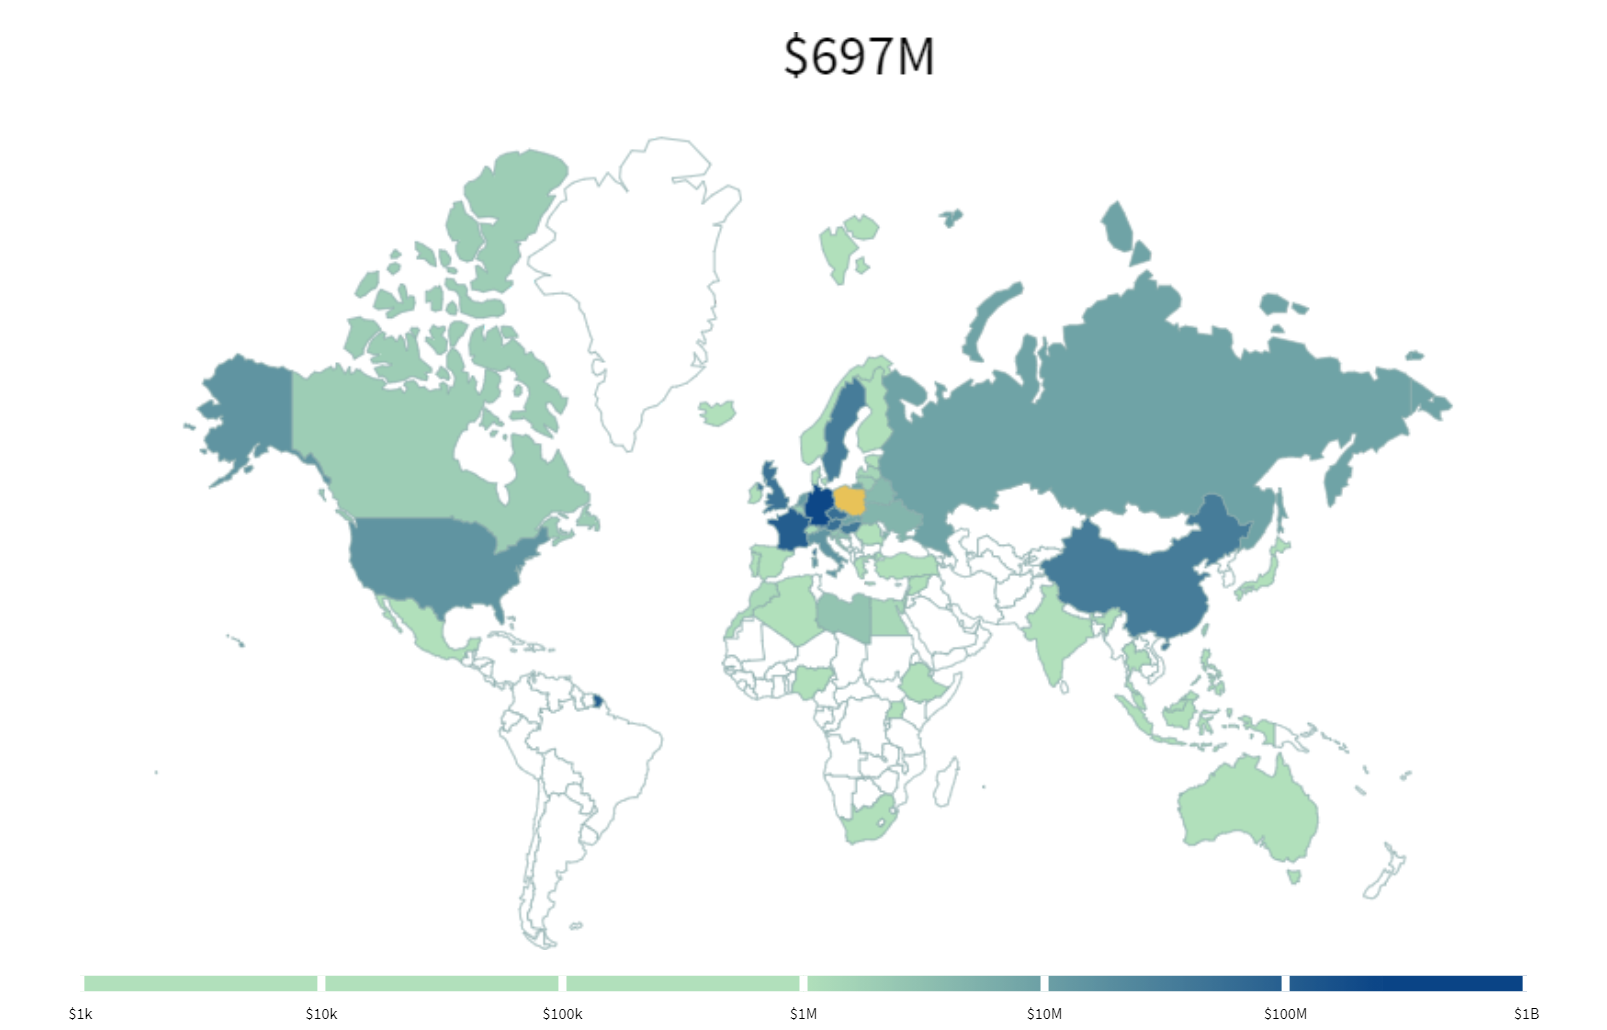 Mapa świata dotyczy eksportu polskiej miedzi w roku 1998. Nad mapą jest napis: $687M. Największa ilość: Niemcy od $100M do $1B. Od $10M do $100 M: Szwecja, Francja, Wielka Brytania, Czechy, Węgry, Austria, Chiny. Brak eksportu do Ameryki Południowej, do większości krajów Afryki.  